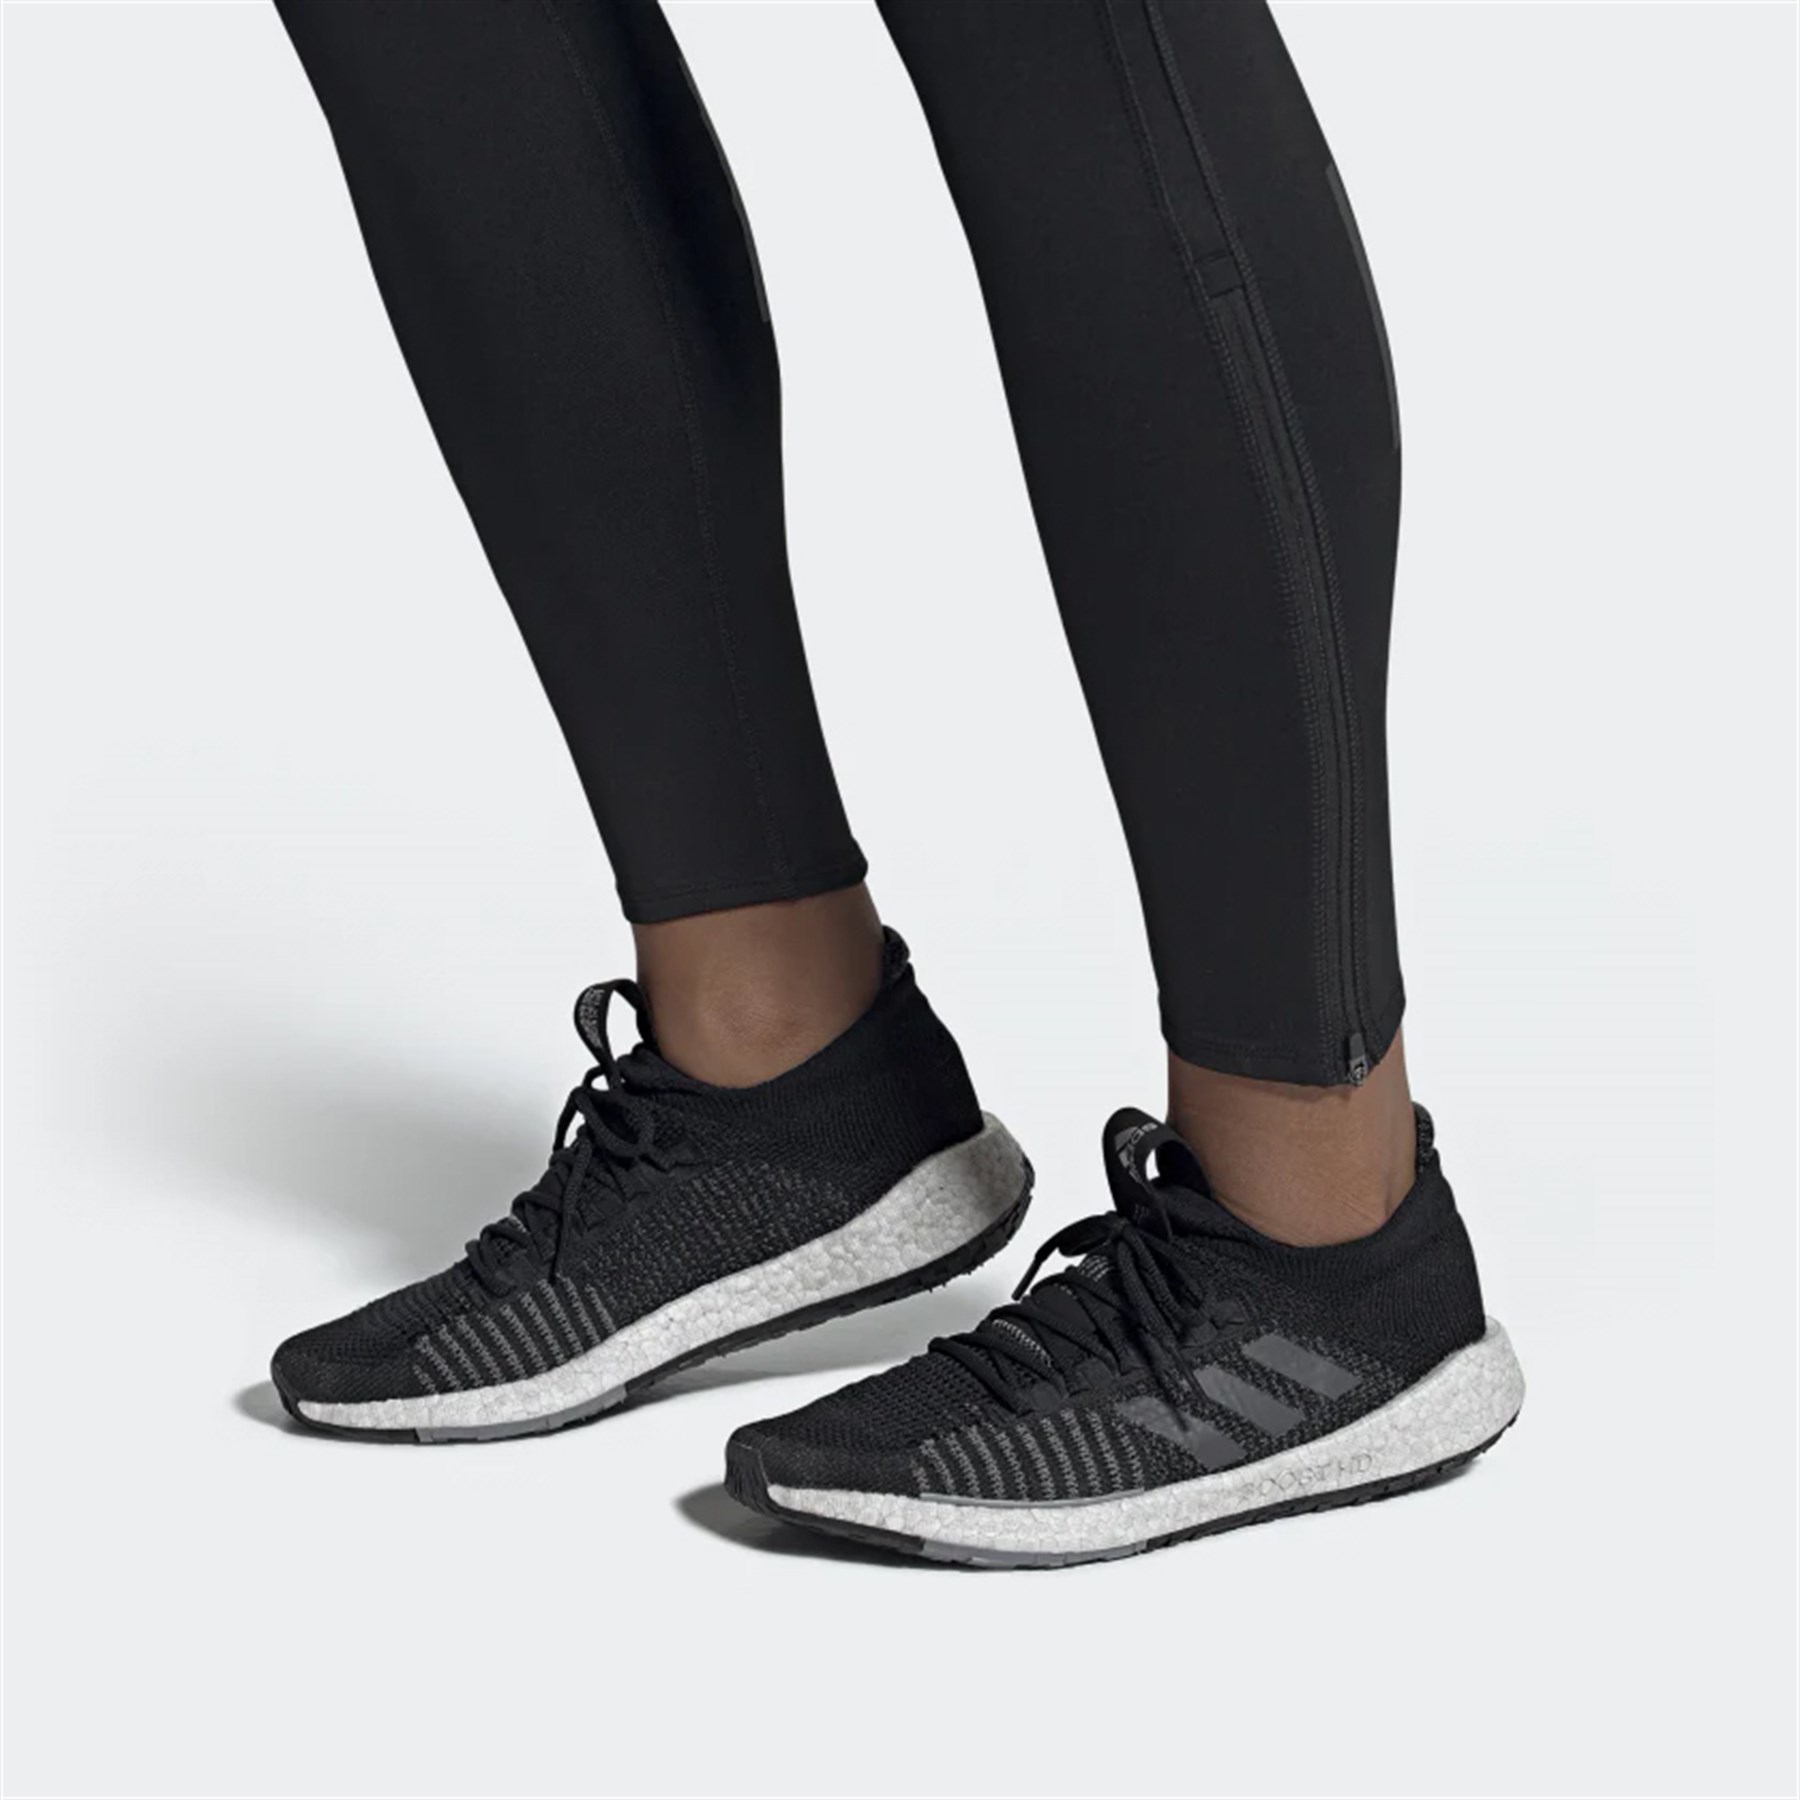 Adidas Erkek Koşu - Yürüyüş Spor Ayakkabı G26929 Pulseboost Hd M